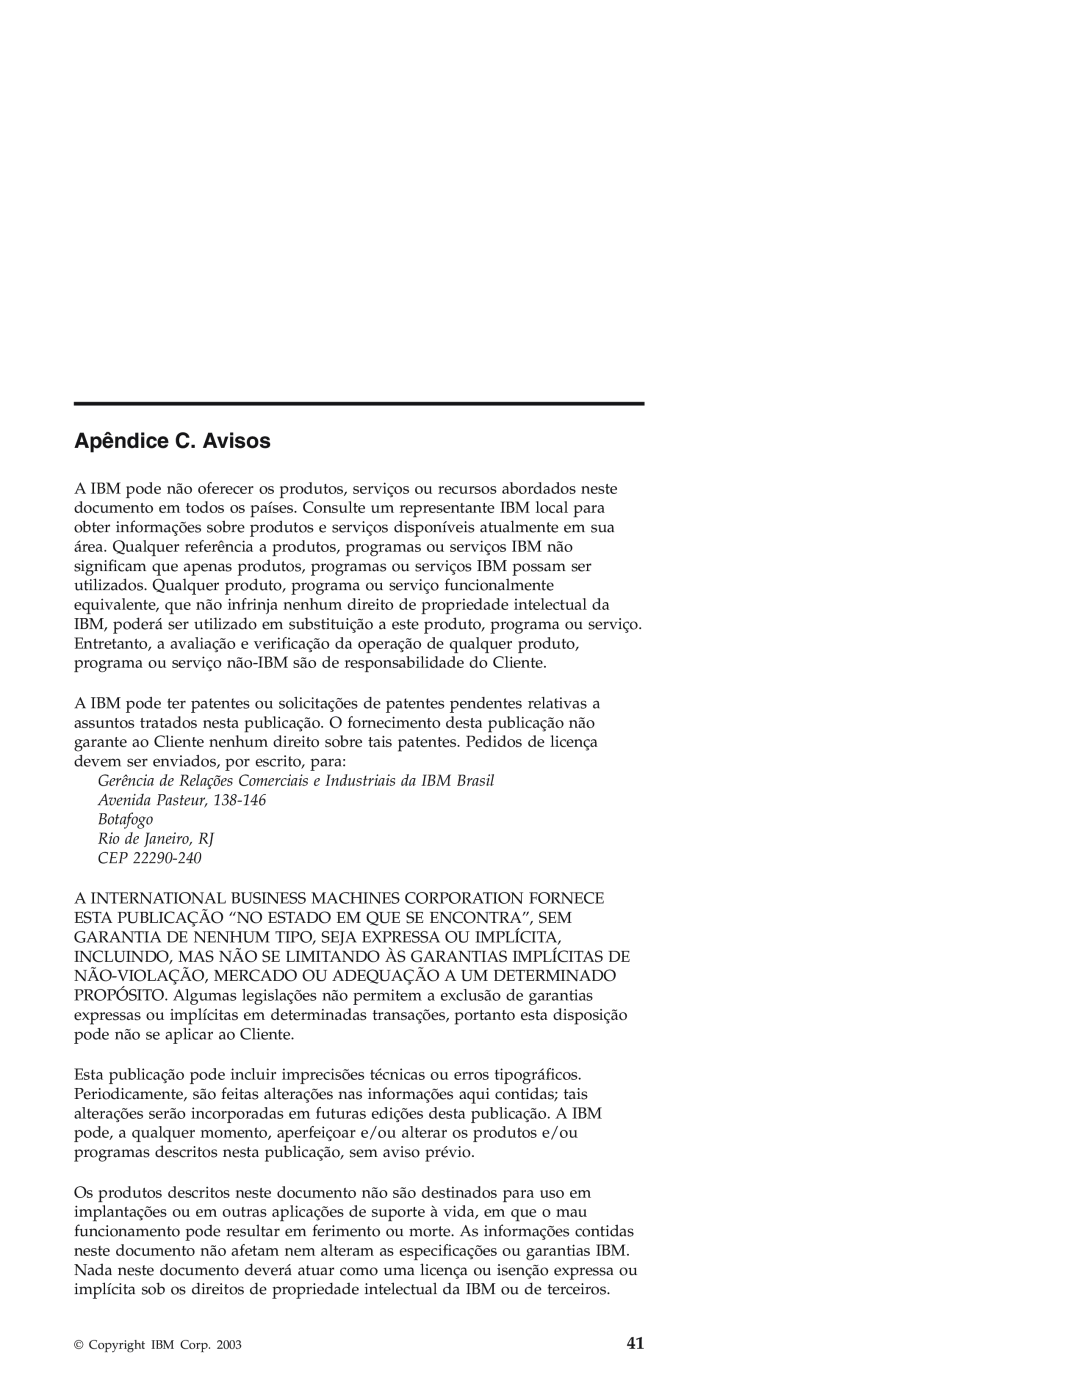 IBM Personal Computer manual Apêndice C. Avisos, Gerência de Relações Comerciais e Industriais da IBM Brasil 